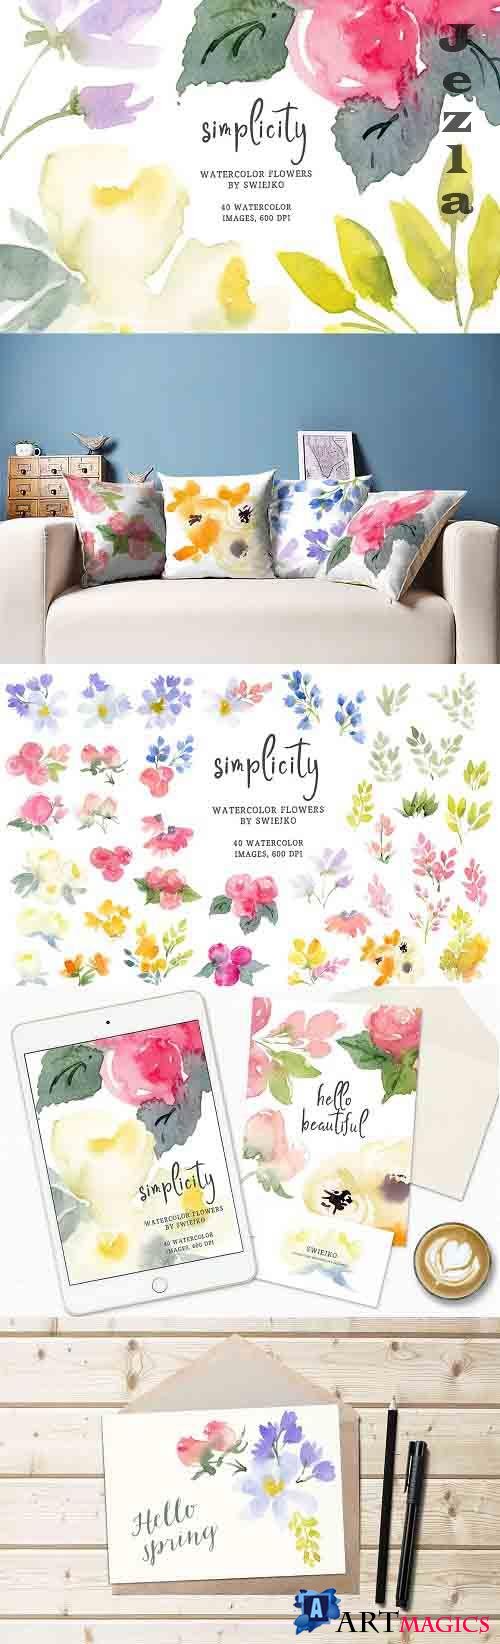 Simple watercolor flowers - 6023425